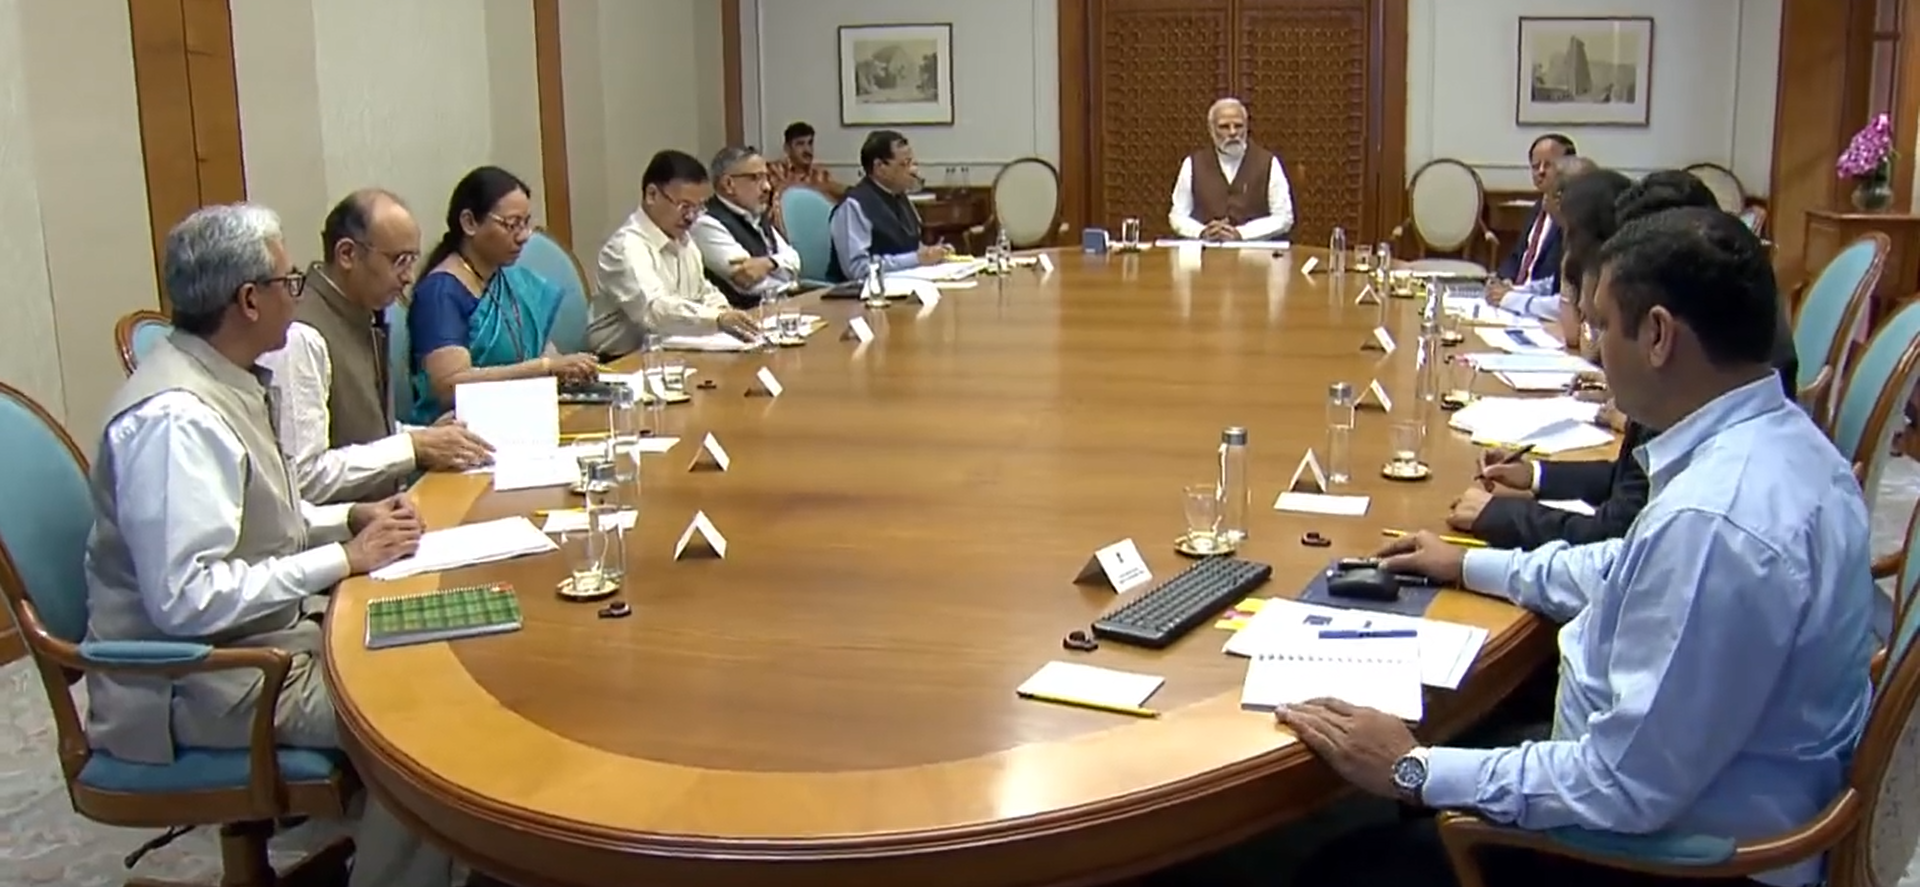 बढ़ते कोविड-19 और इन्फ्लुएंजा के बीच पीएम मोदी ने बुलाया उच्च स्तरीय बैठक